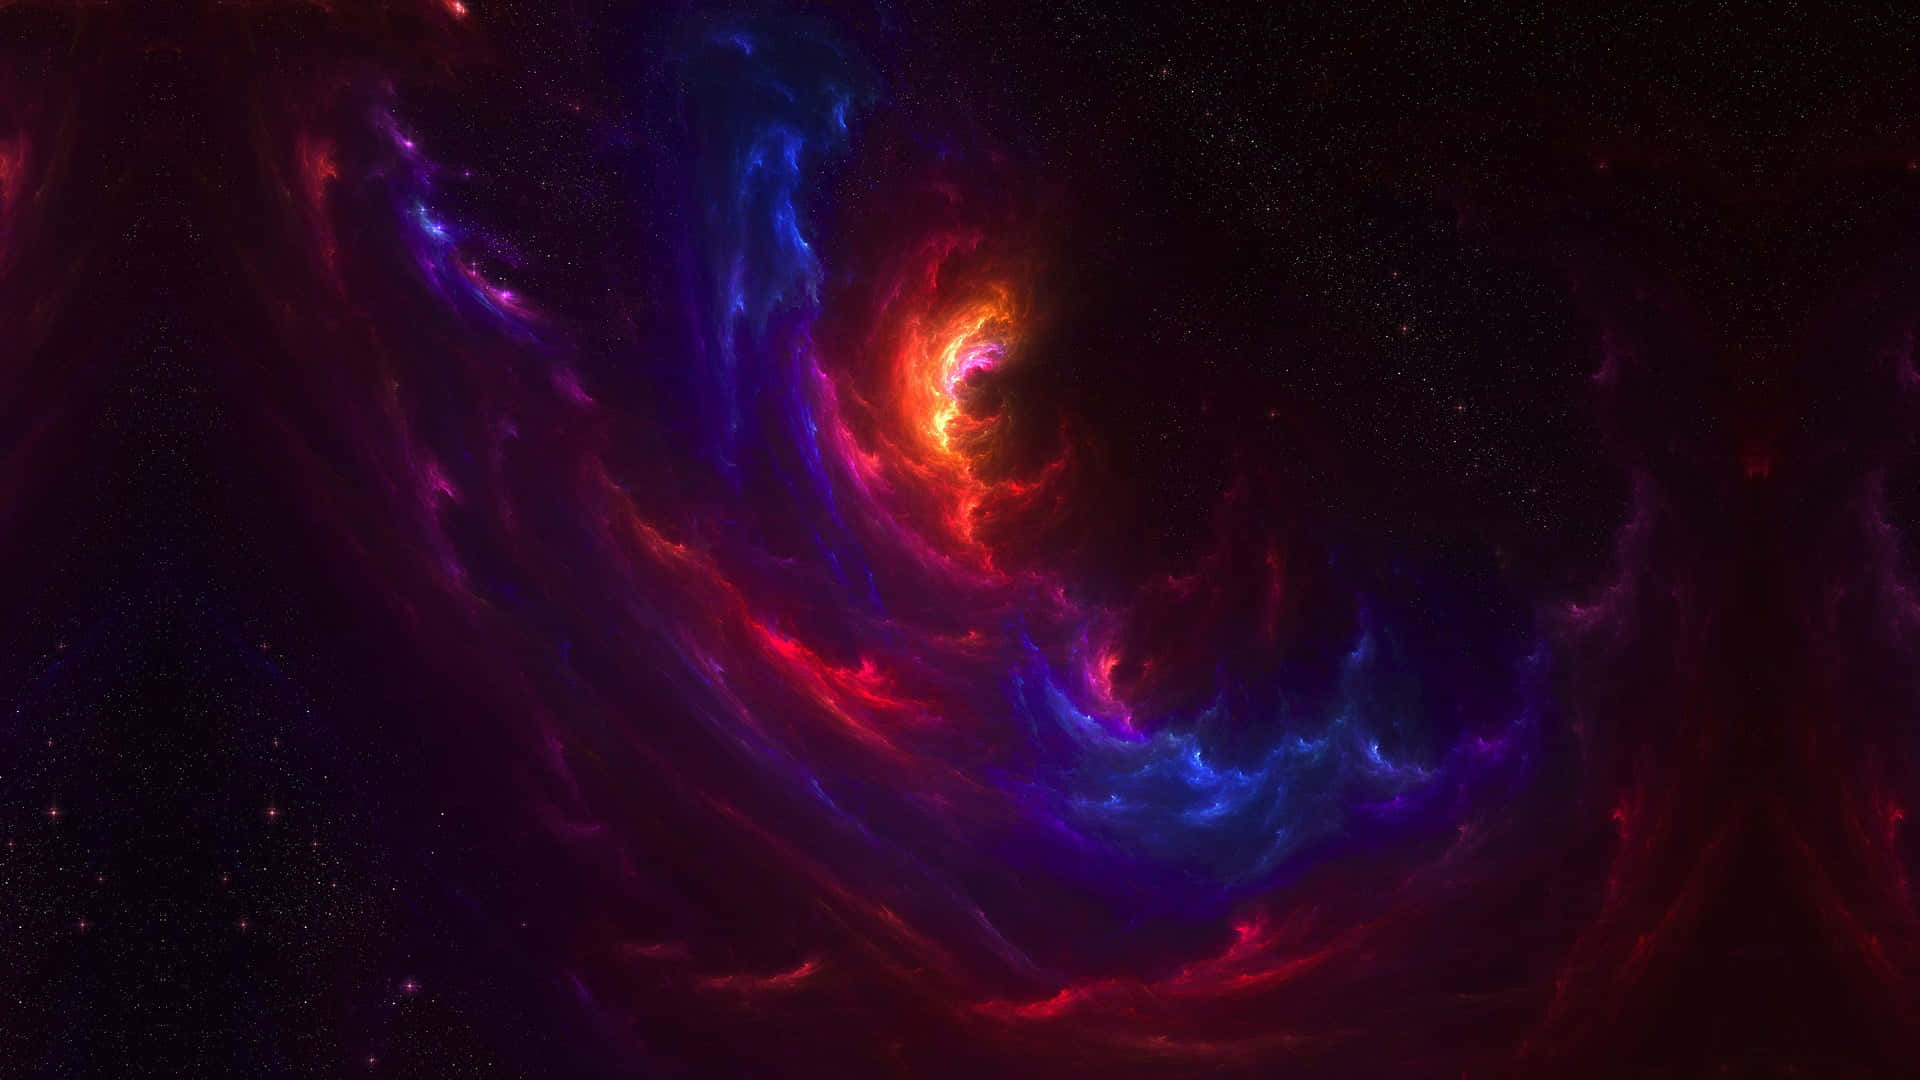 Impresionantepaisaje Galáctico En Negro Y Morado Fondo de pantalla